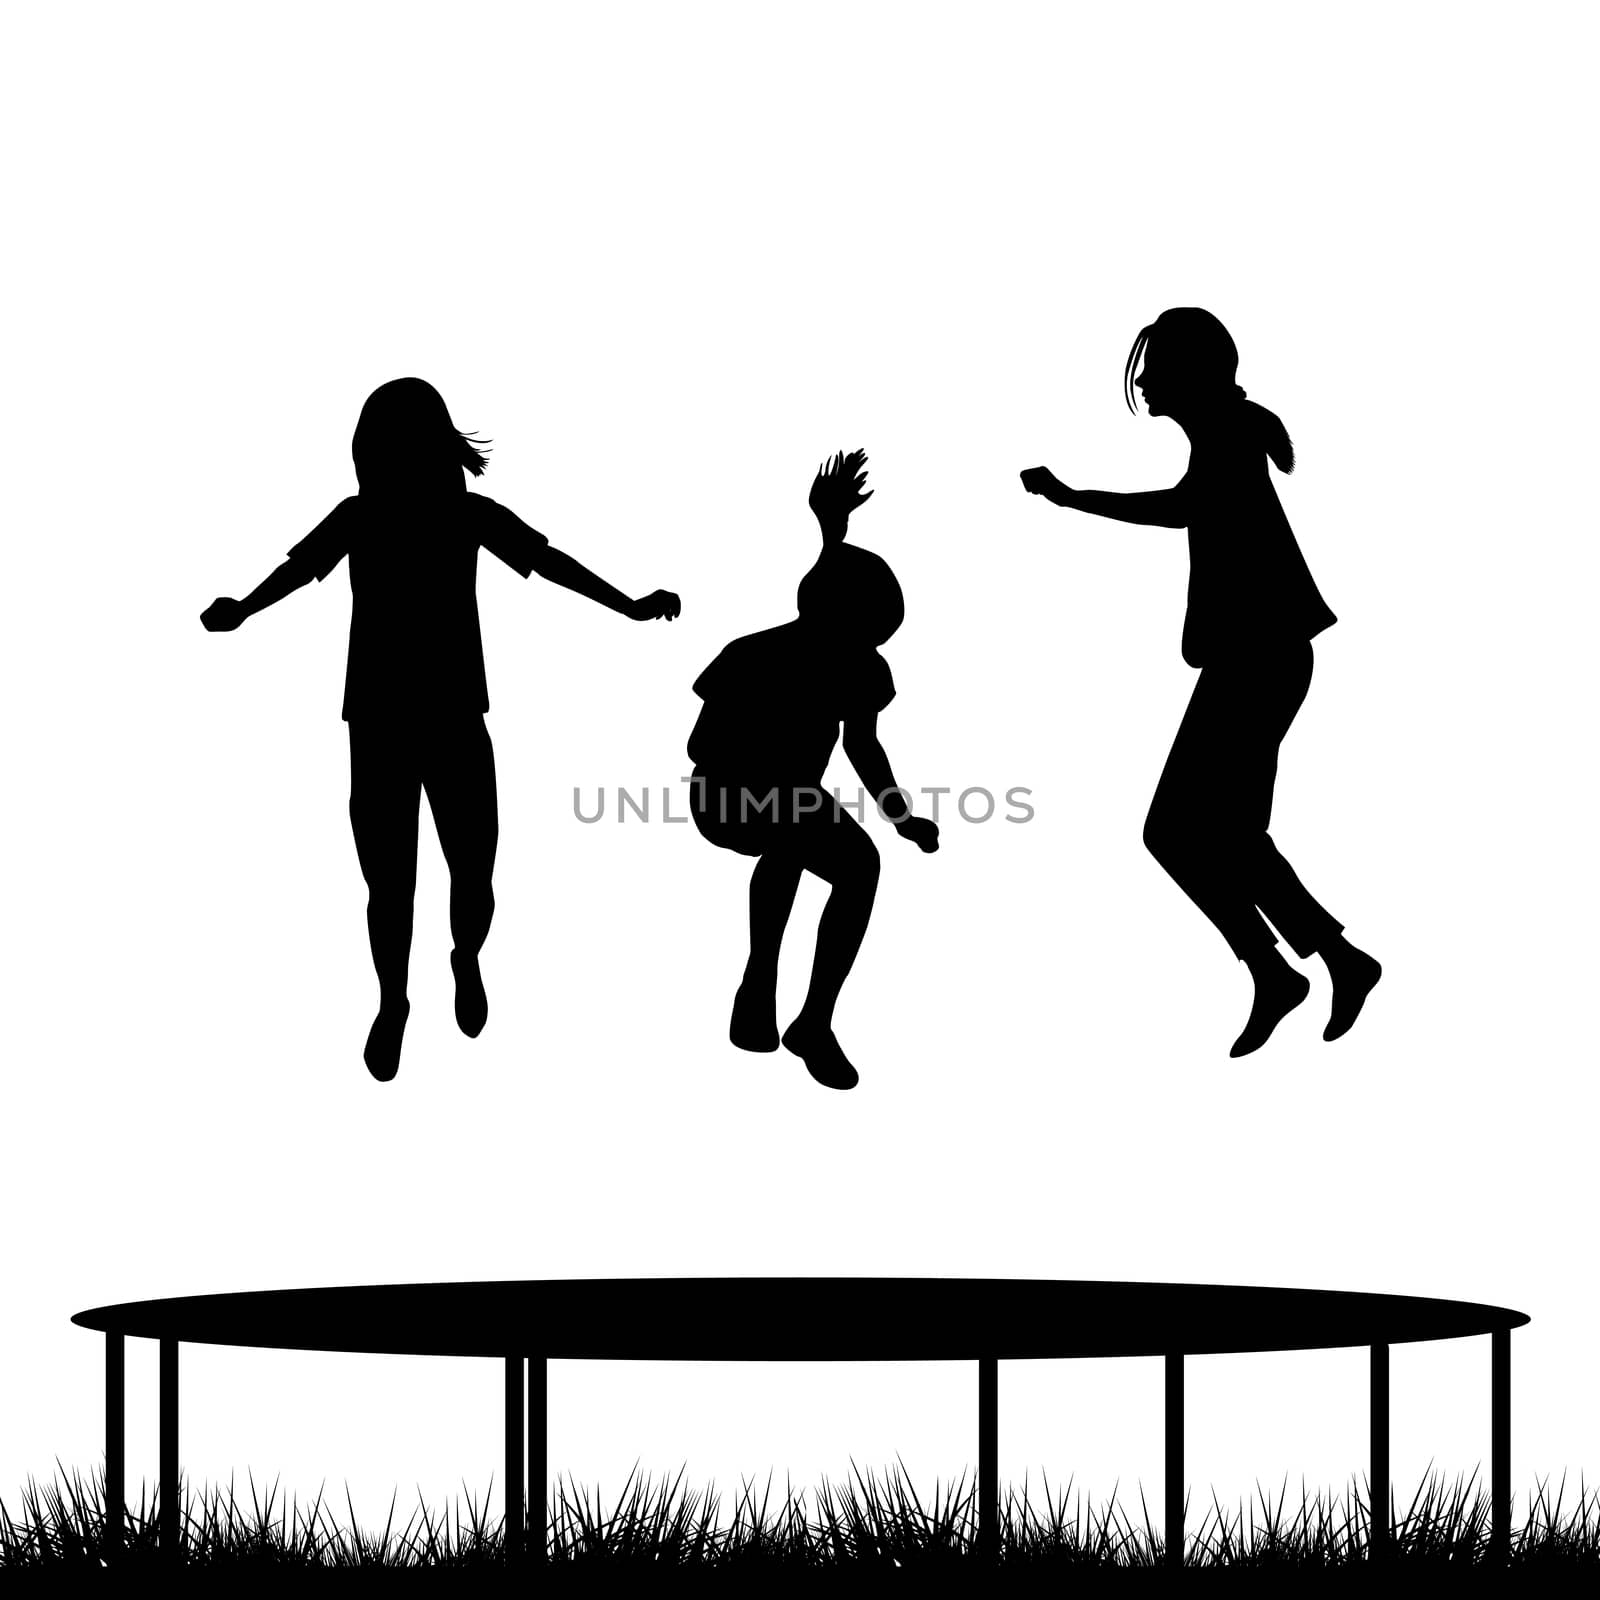 Children silhouettes jumping on garden trampoline by hibrida13